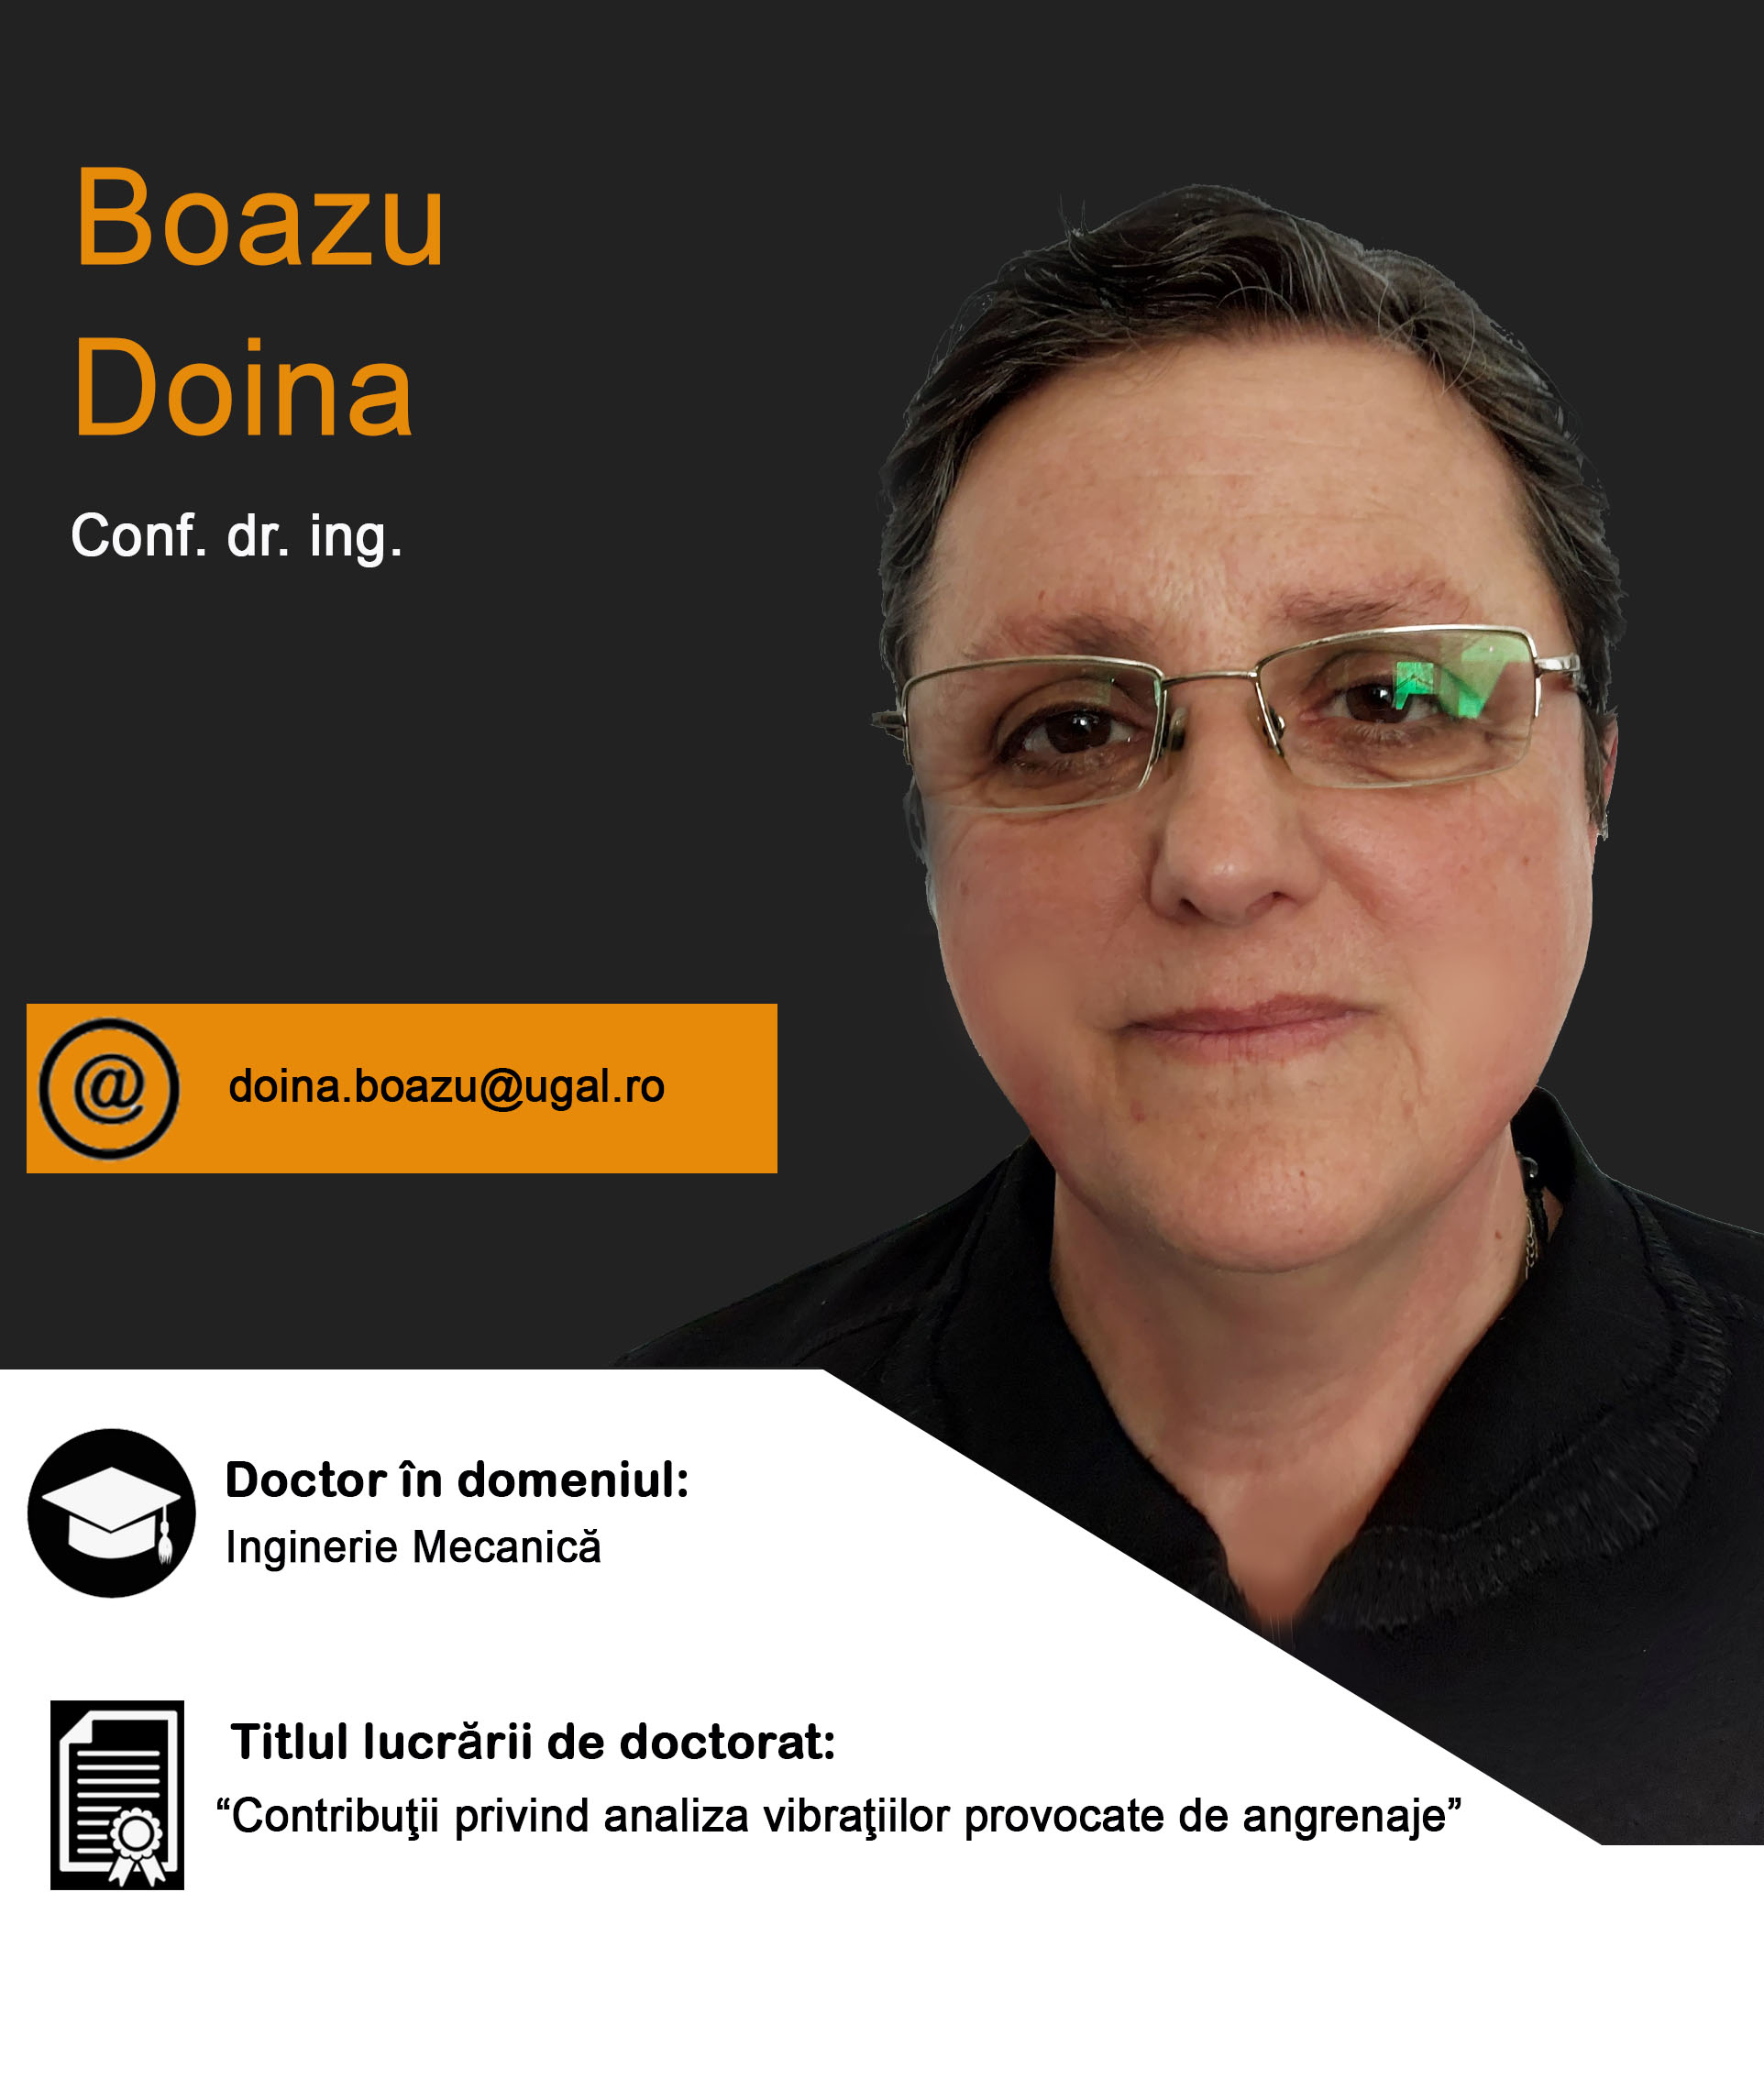 BoazuDoina